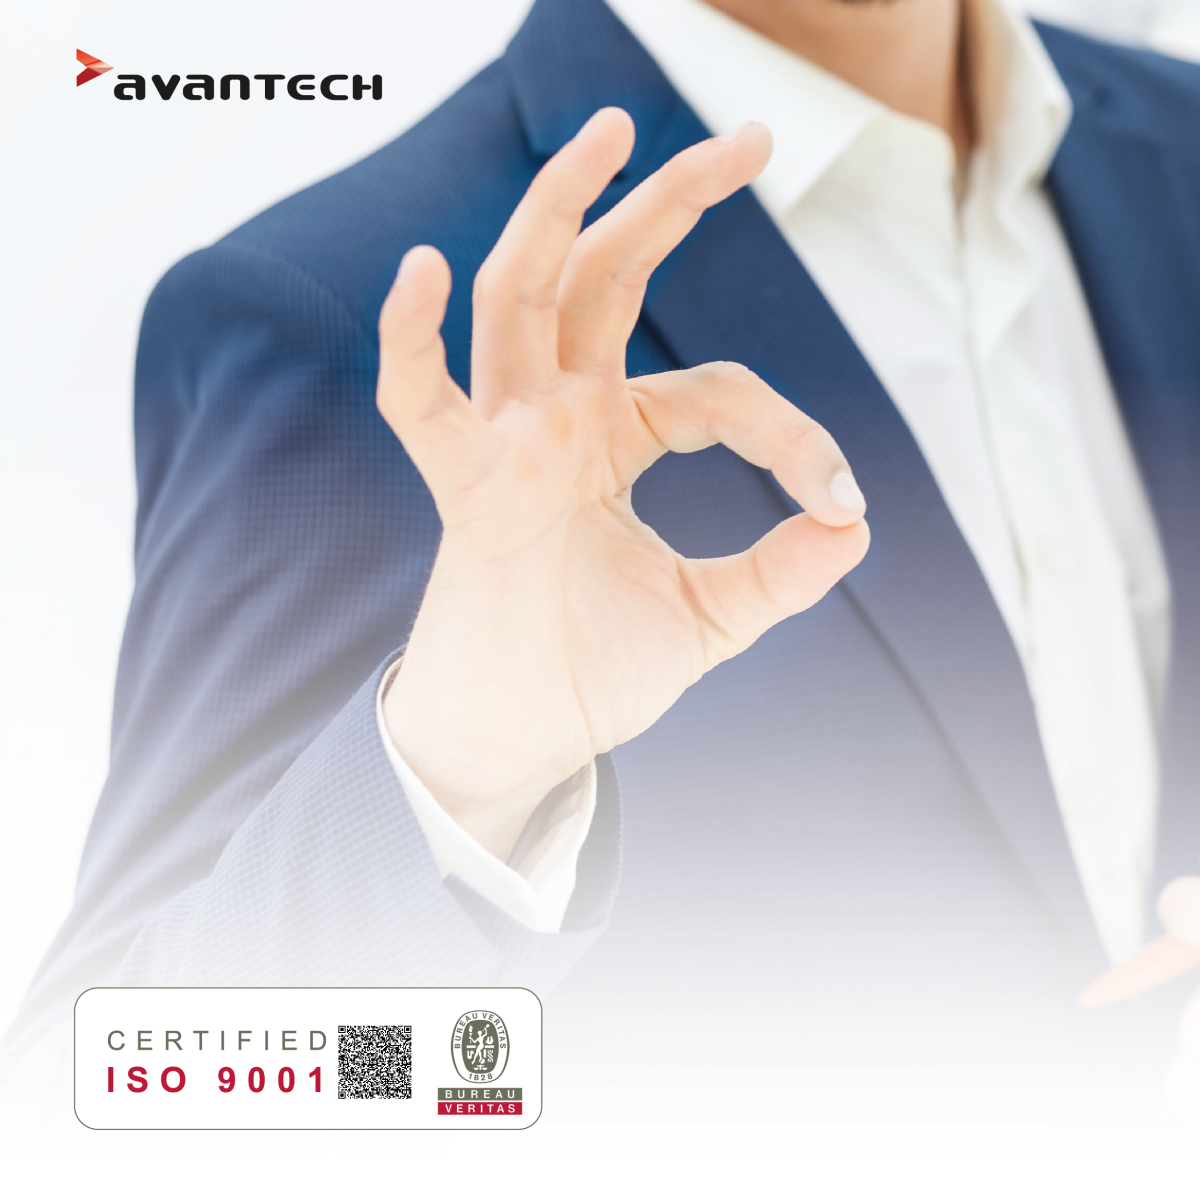 Avantech Ltd Earns ISO 9001:2015 Certification